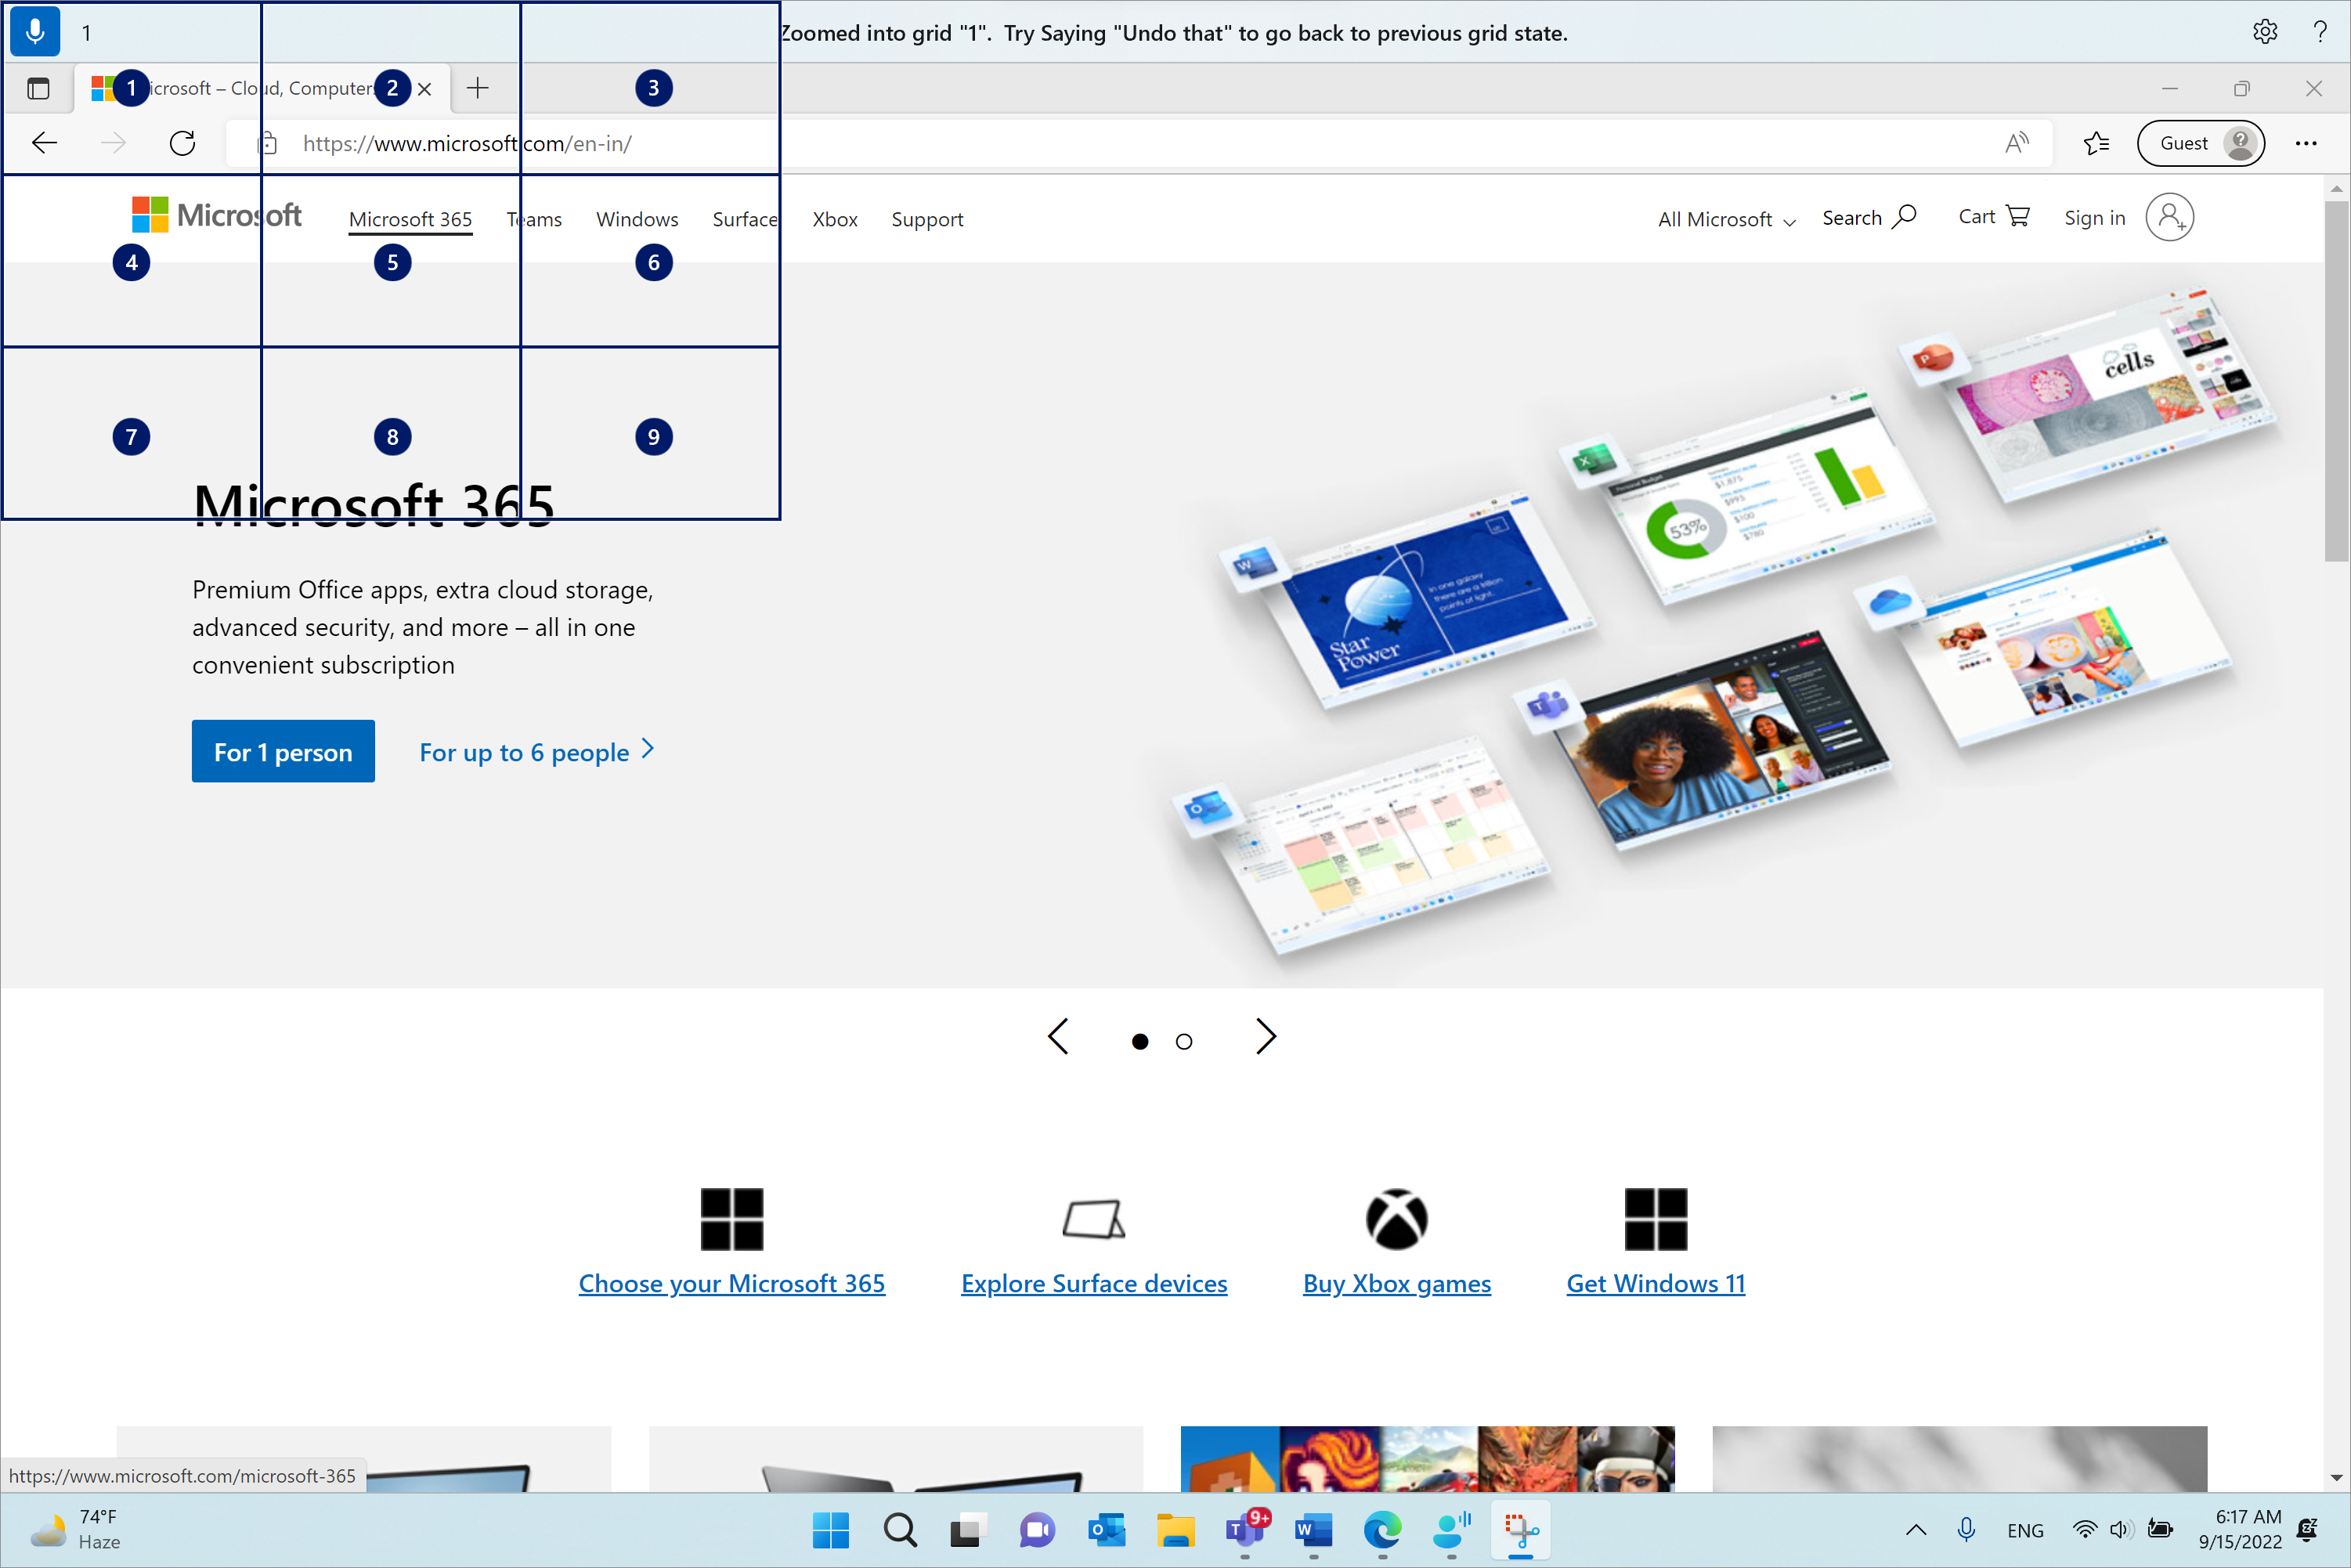 Microsoft Edge está abierto y en la página de Microsoft.com. La barra de acceso de voz está en la parte superior y en estado de escucha. El comando emitido es "1" y el comentario mostrado es "Ampliada en la cuadrícula "1". Prueba a decir "deshacer eso" para volver al estado de cuadrícula anterior".